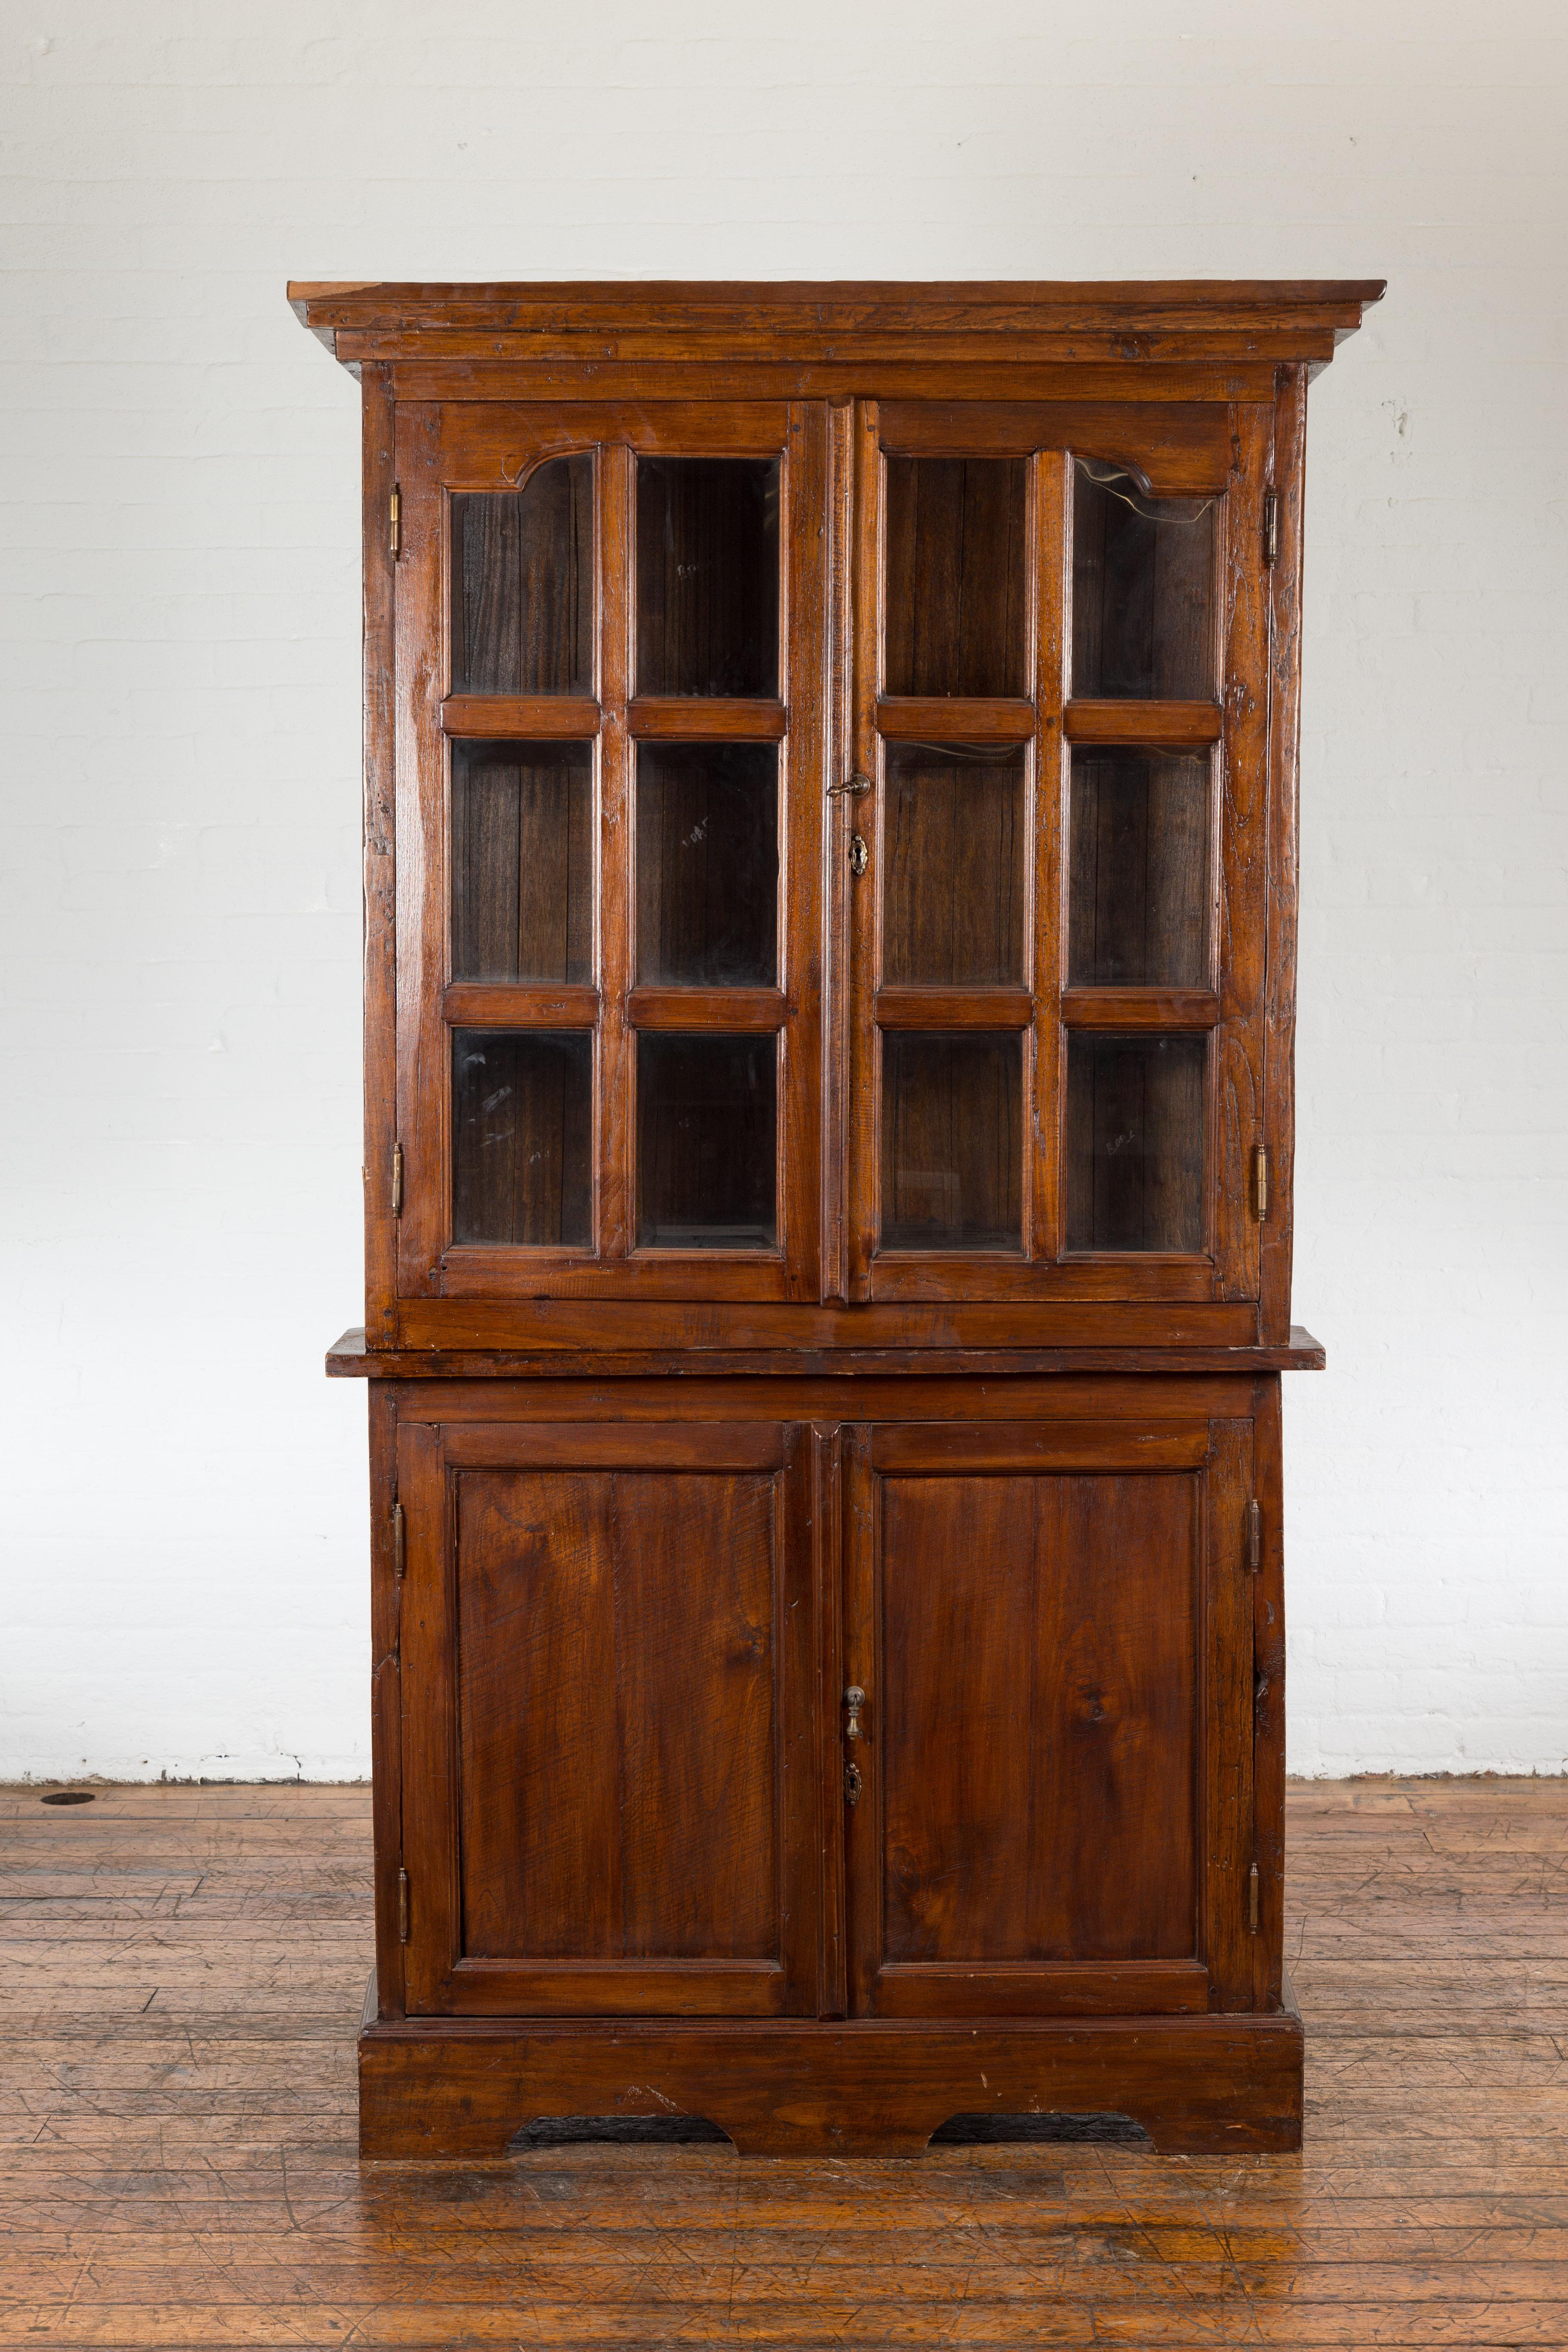 Eine antike javanische, zweiteilige Eckvitrine aus der niederländischen Kolonialzeit aus dem frühen 20. Jahrhundert mit verglasten Türen im oberen Teil und Holztüren im unteren Teil. Dieser antike javanische Eckschrank im niederländischen